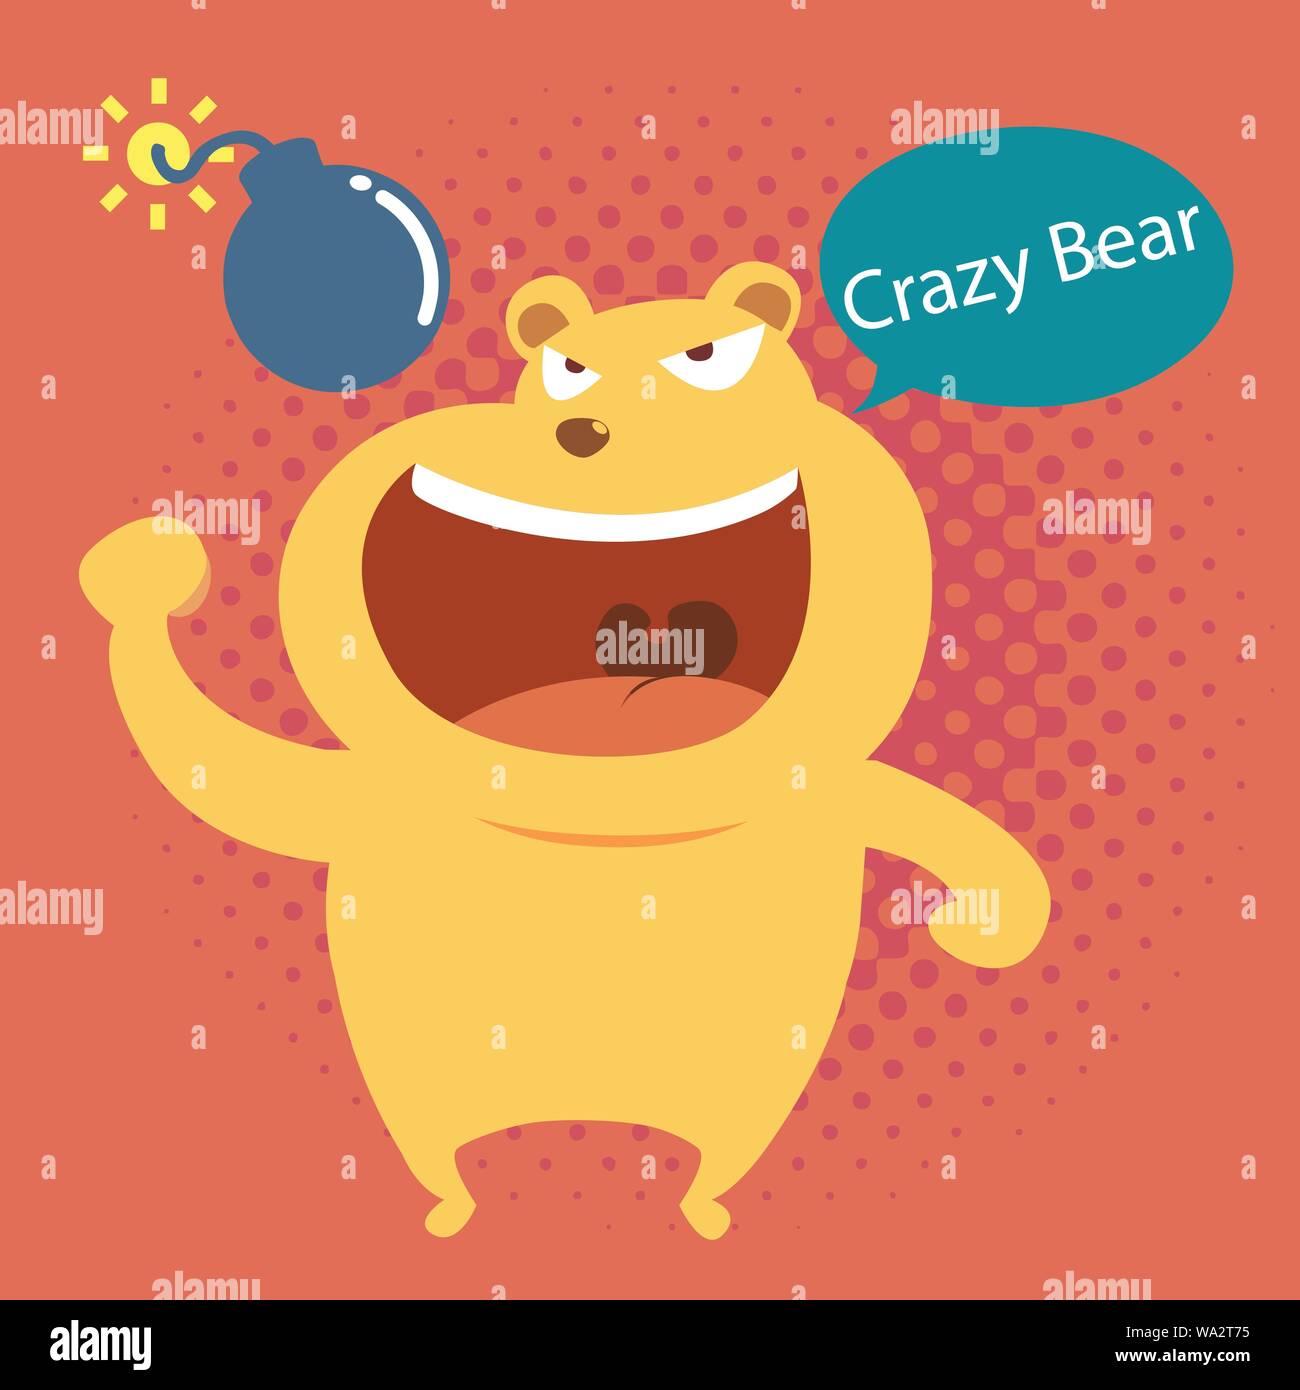 Crazy bear character design e bomb Illustrazione Vettoriale